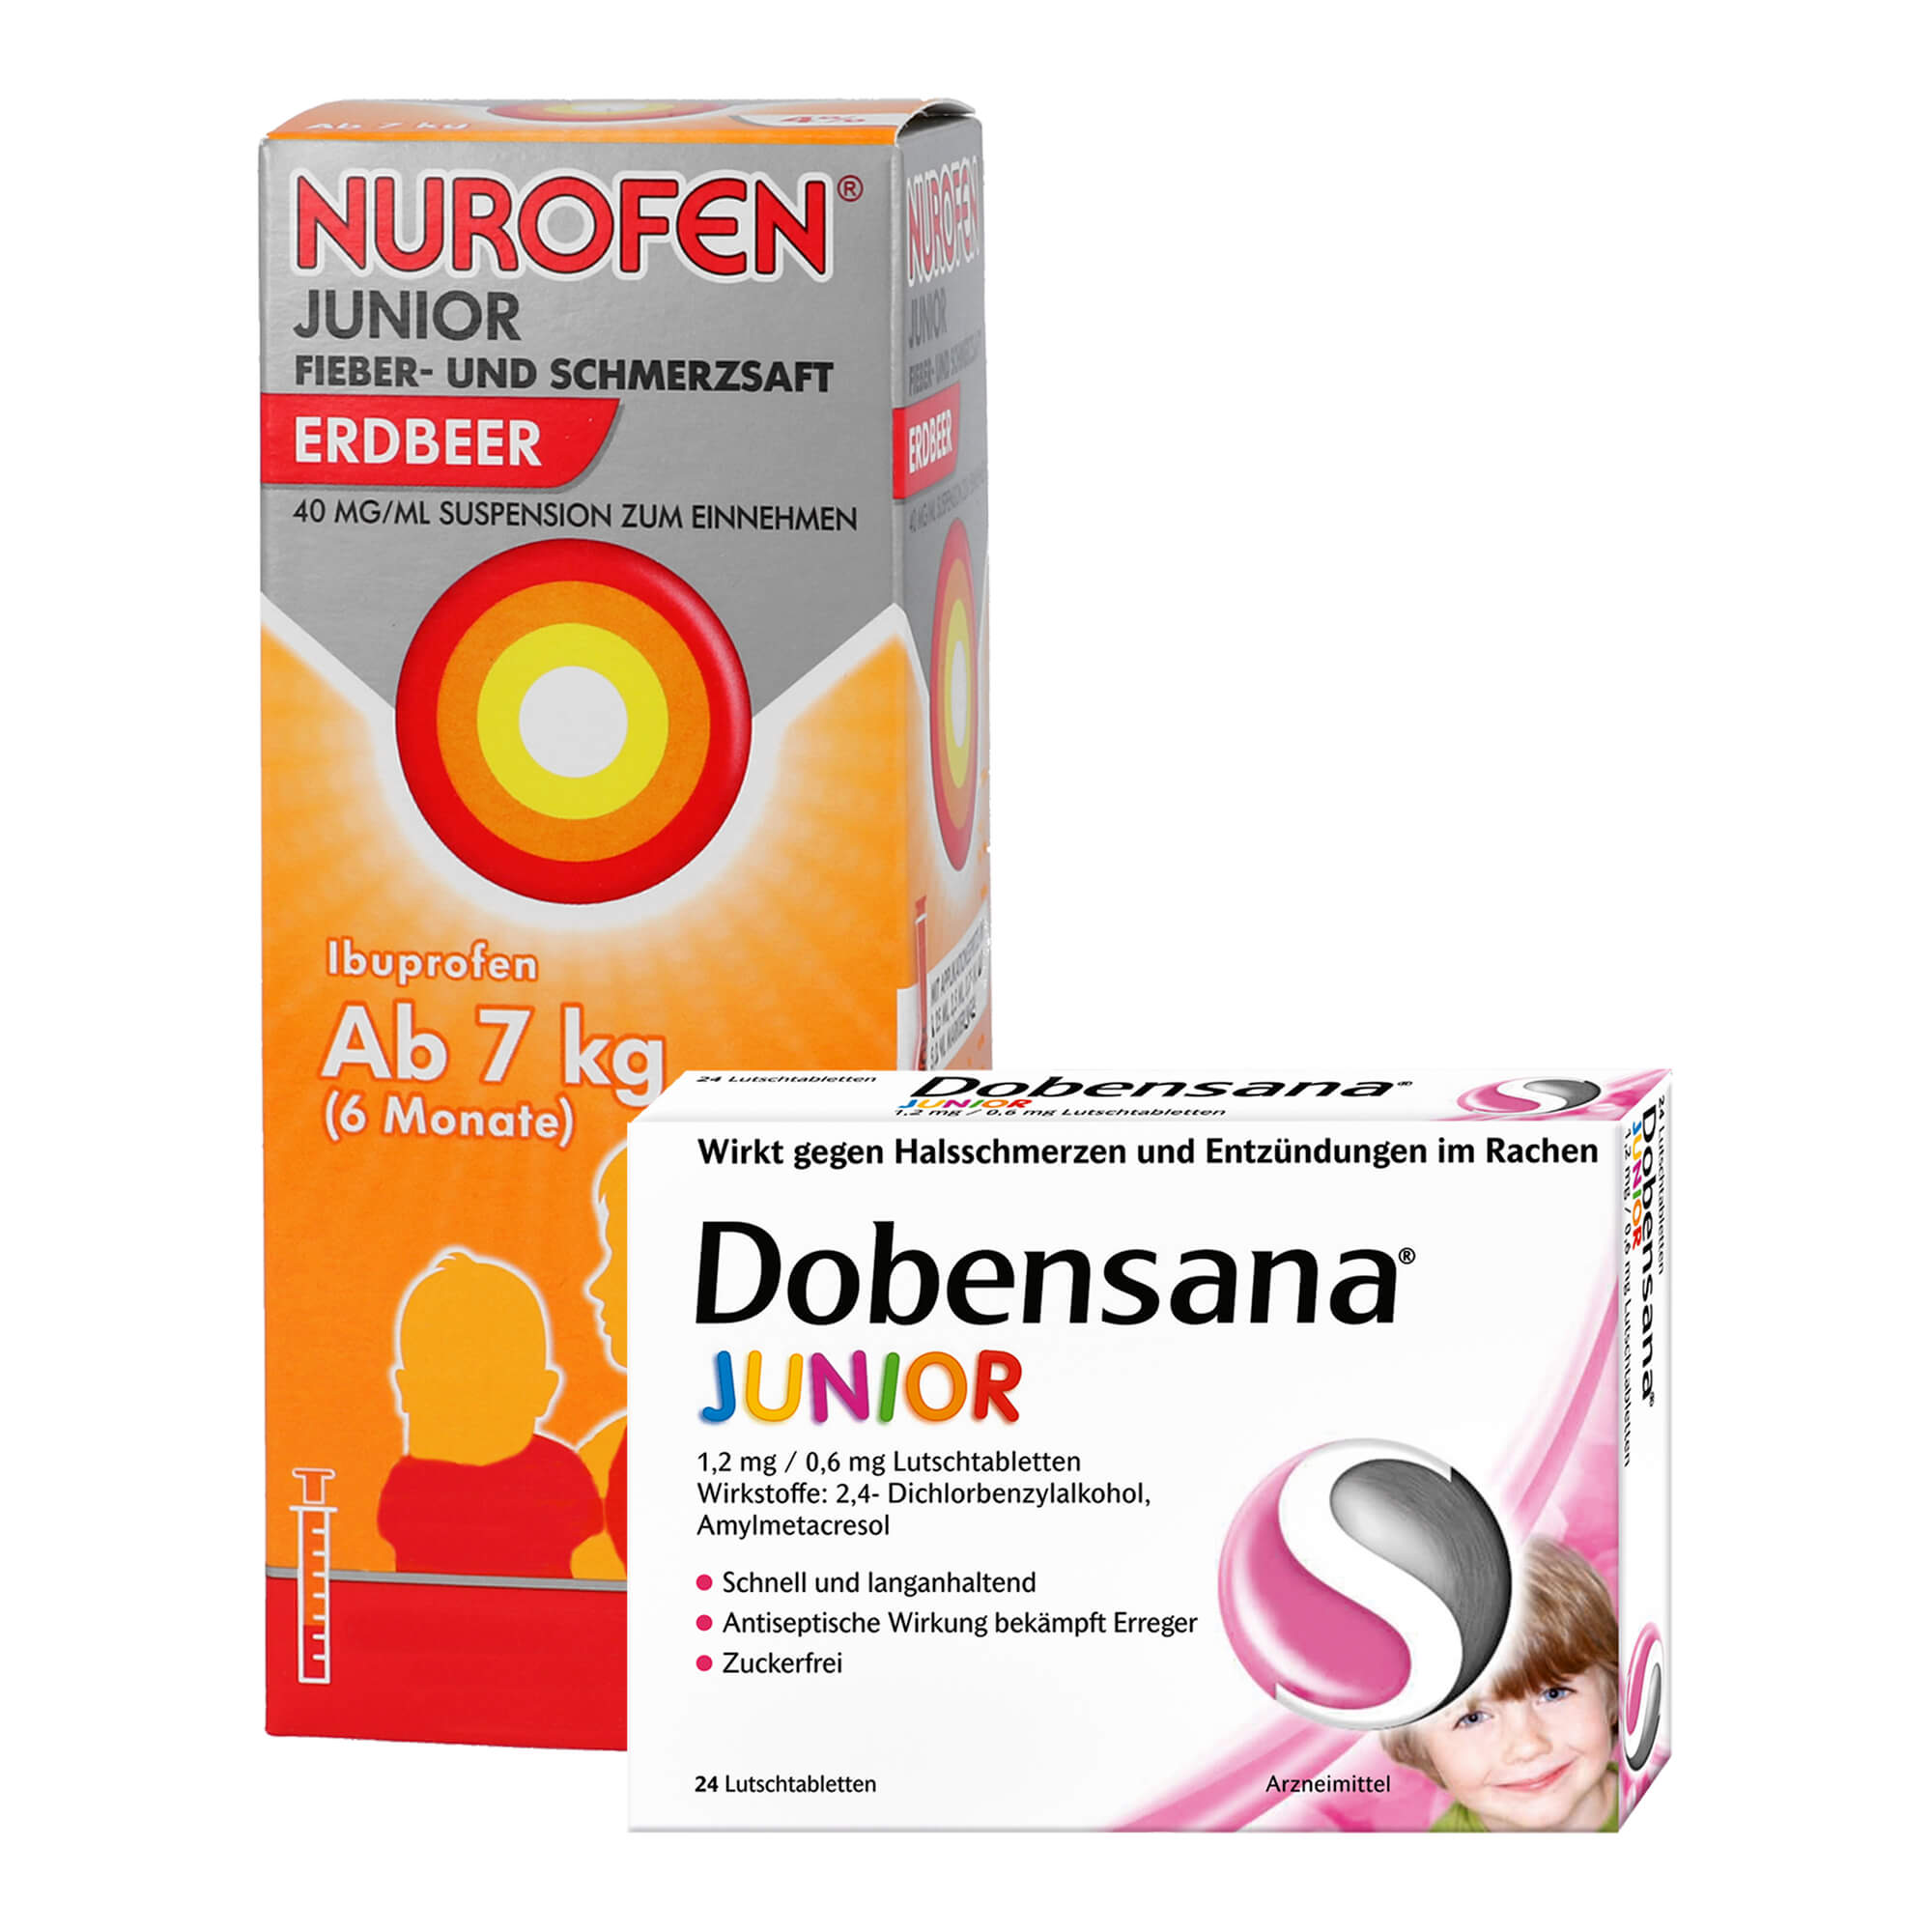 Mit 100 ml Nurofen Junior Fieber- & Schmerzsaft Erdbeer und 24 Dobensana Junior 1,2 mg/ 0,6 mg Lutschtabletten.